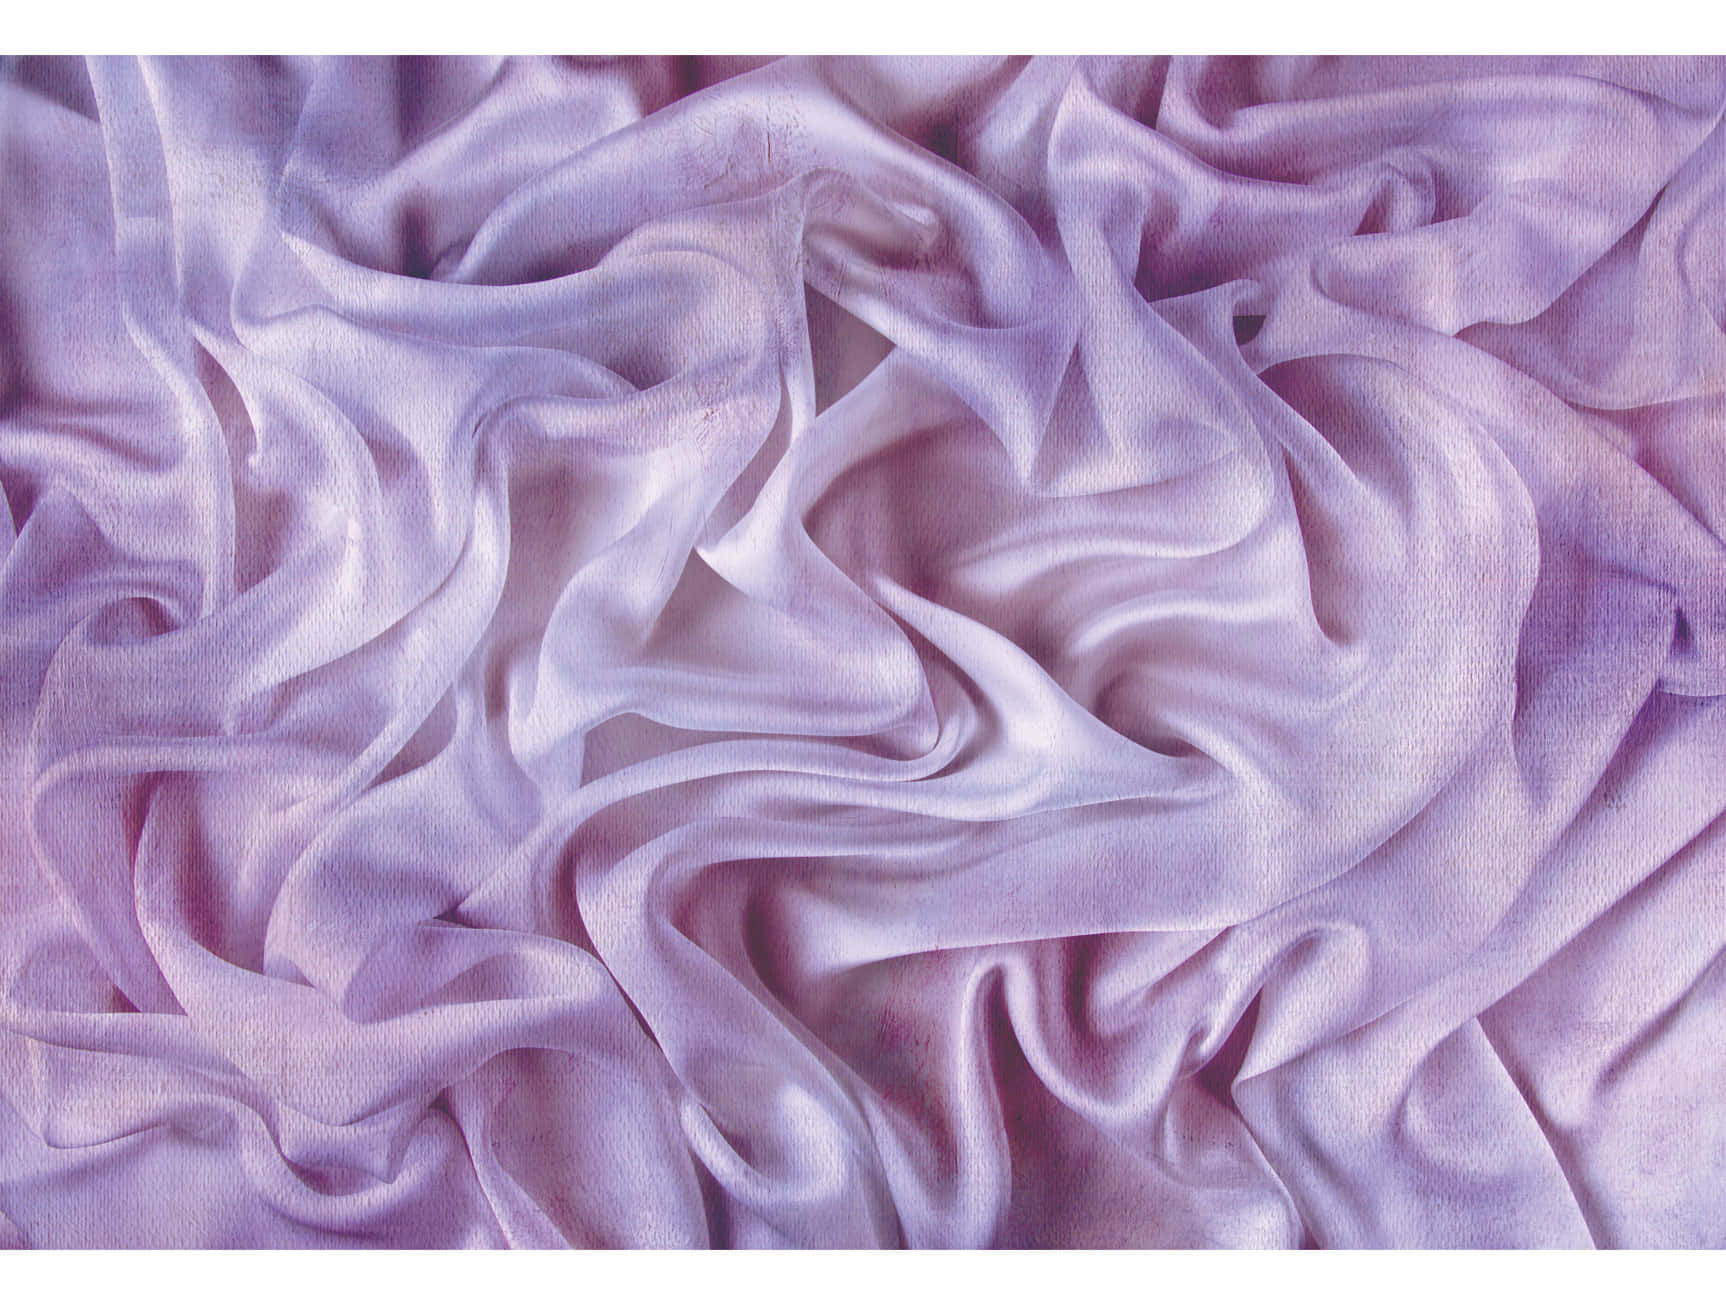 Luxurious Purple Silk Pillow Wallpaper